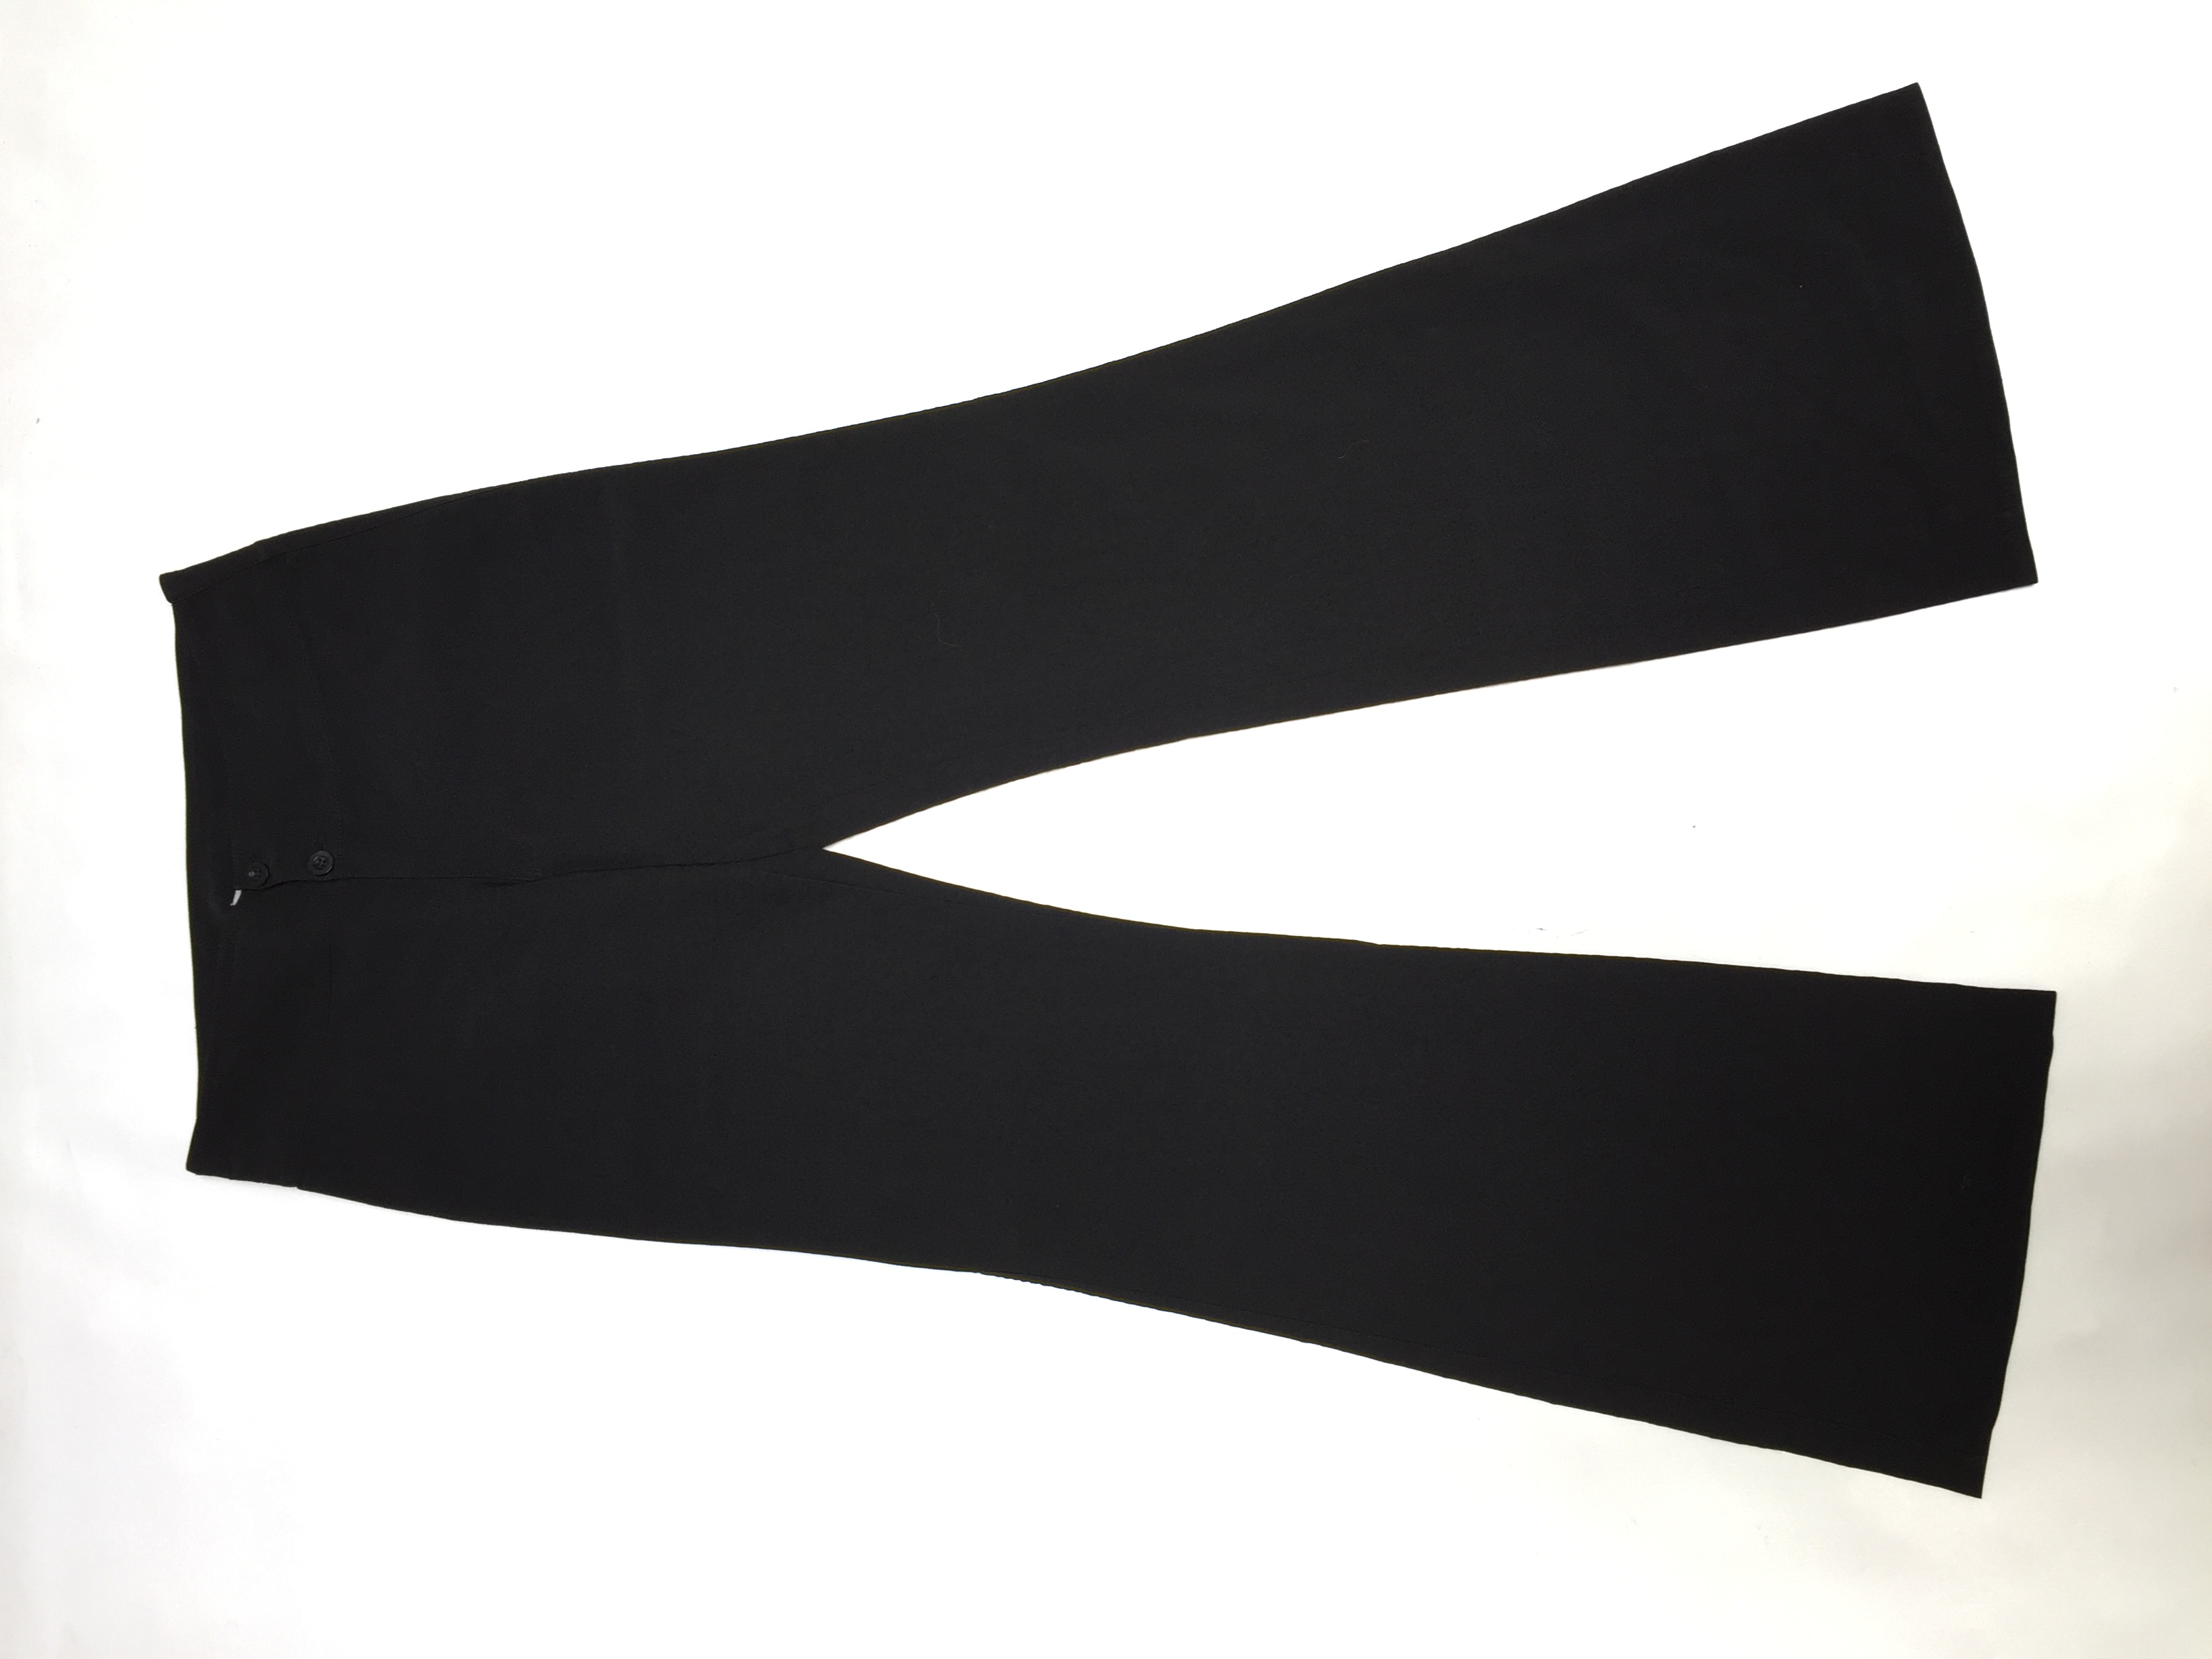 Pantalón negro de vestir con pretina ancha y botones, ligeramente acampanado y un bolsillo secreto. Un básico! Pretina 76cm
Talla 28